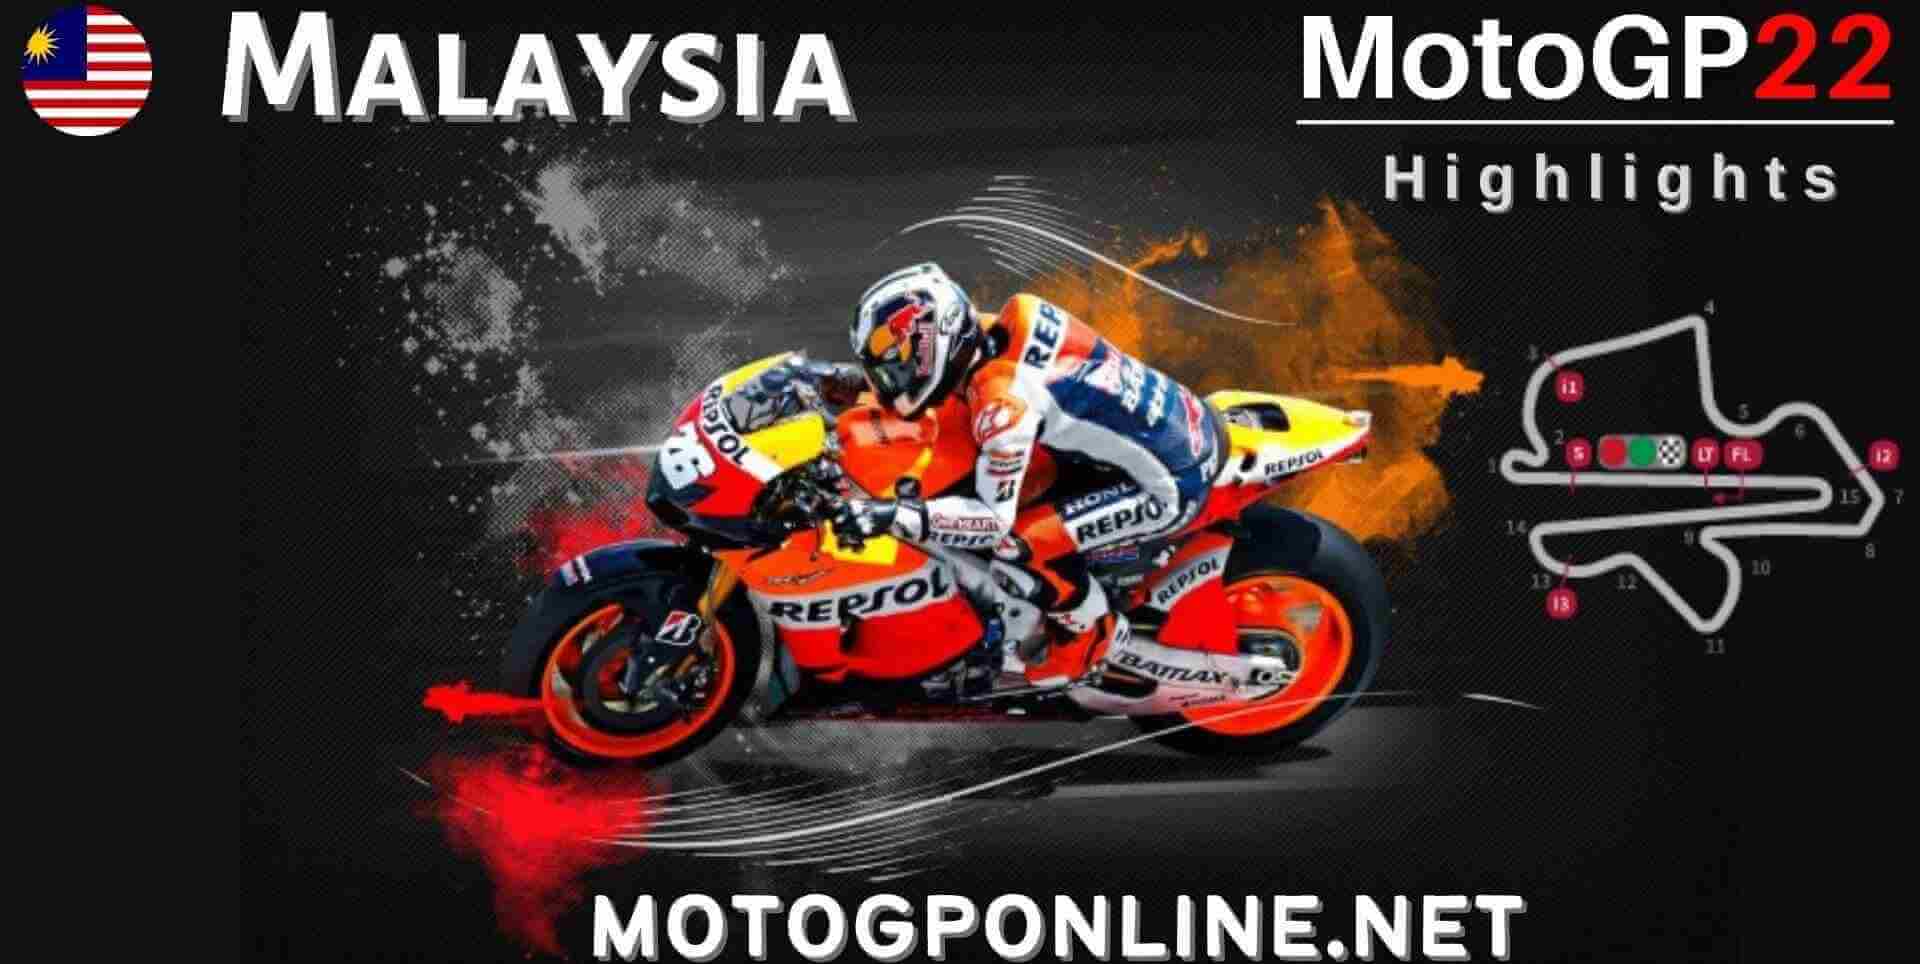 Malaysian MotoGP Grand Prix Highlights 2022